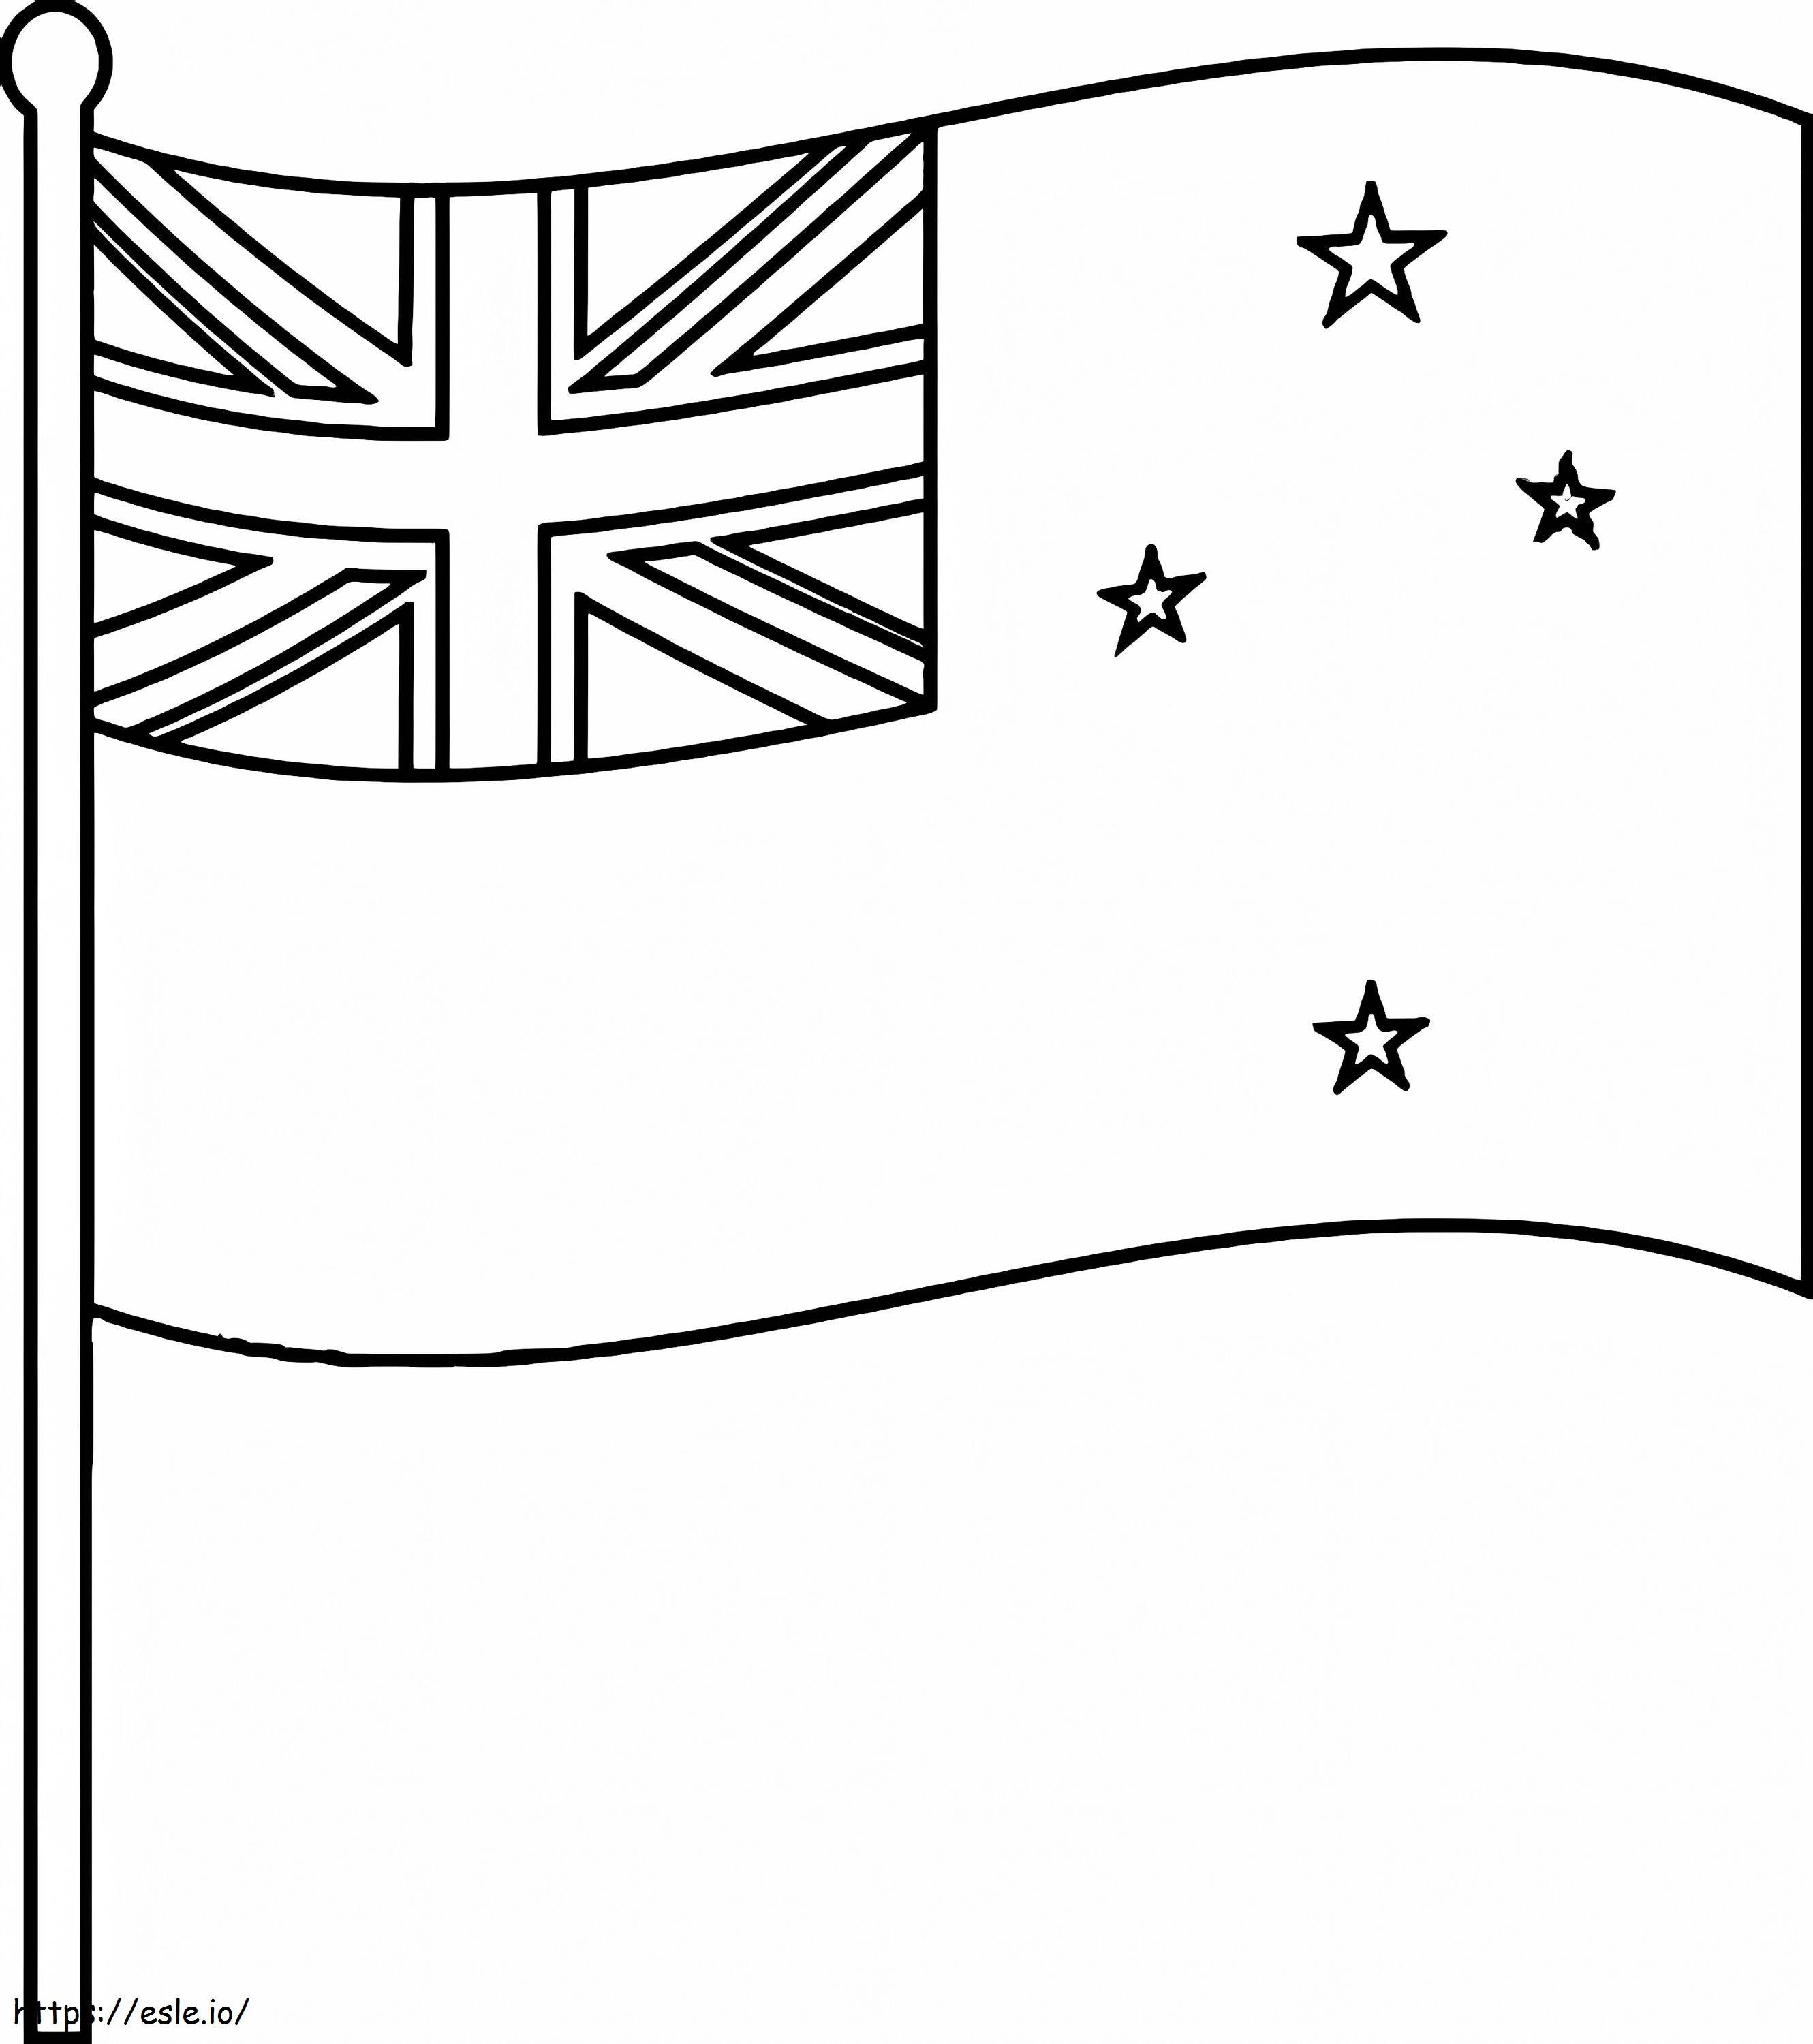 Bandera de Nueva Zelanda 1 para colorear